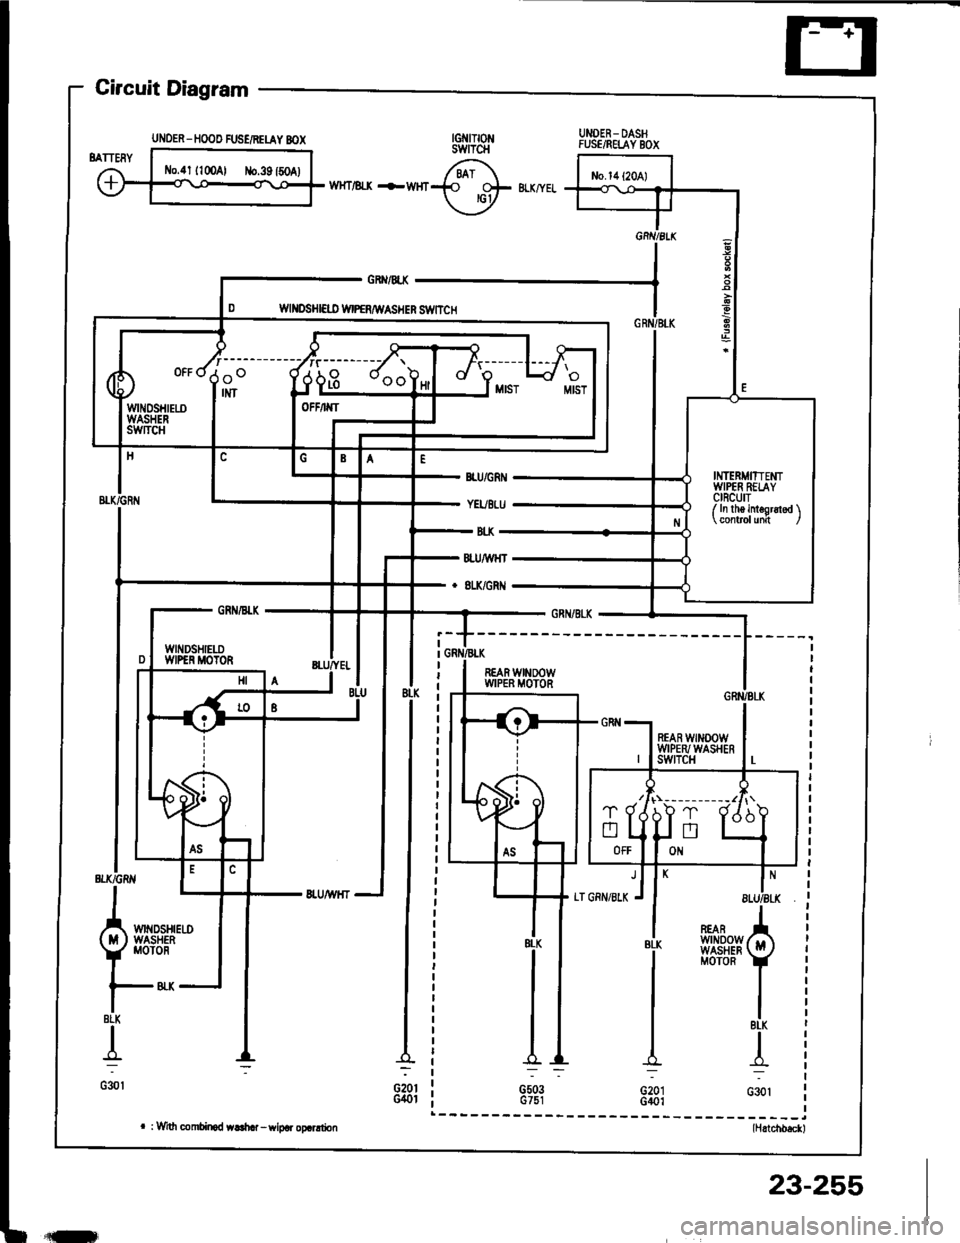 HONDA INTEGRA 1994 4.G User Guide Circuit Diagram
UNOER- DASHFUSE/RELAY BOX
WHT/ll-X -FWHr
GRX/4X
WII{DSHI€ID WIPERAIVASHER S1VITCH
REAR WINOOWWIPER MOTOR
BLK
{
G30l
REARwtN00wWASHERMOTOR
BLK
G20IG401
l*_(ittwA!
Y 
Mor
|-8LK
I
G30l